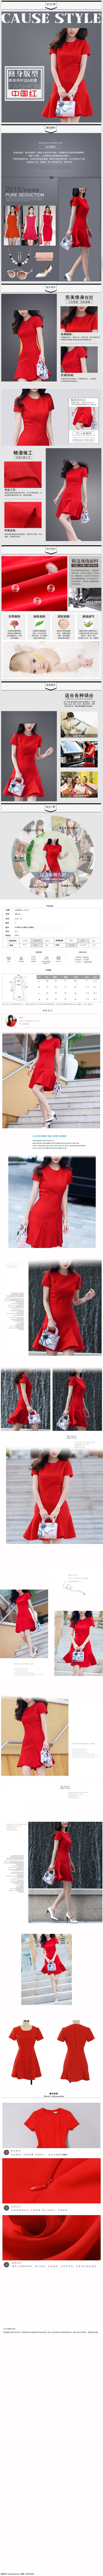 红色连衣裙女 天猫 红色 连衣裙 淘宝素材 淘宝设计 淘宝模板下载 灰色